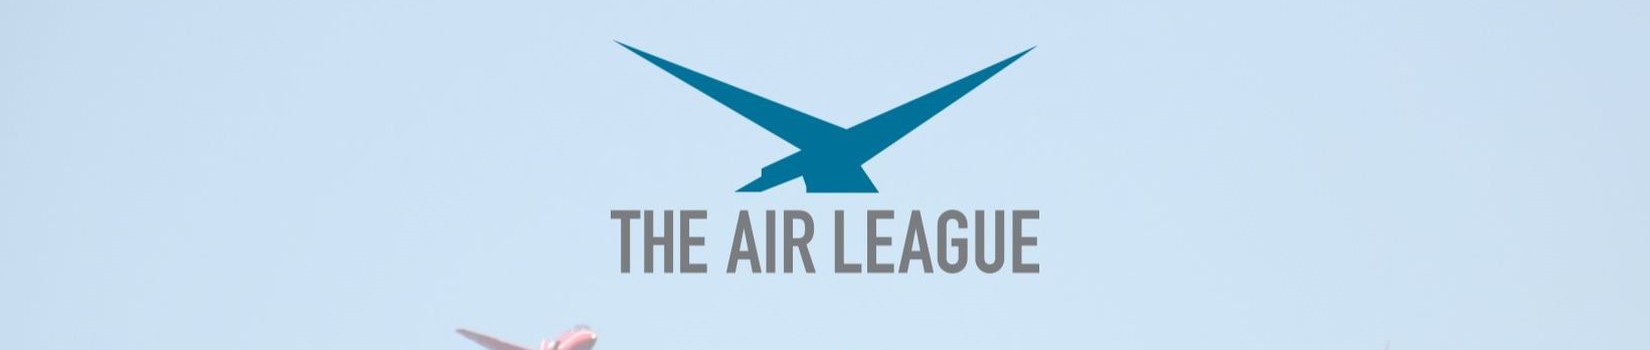 The Air League